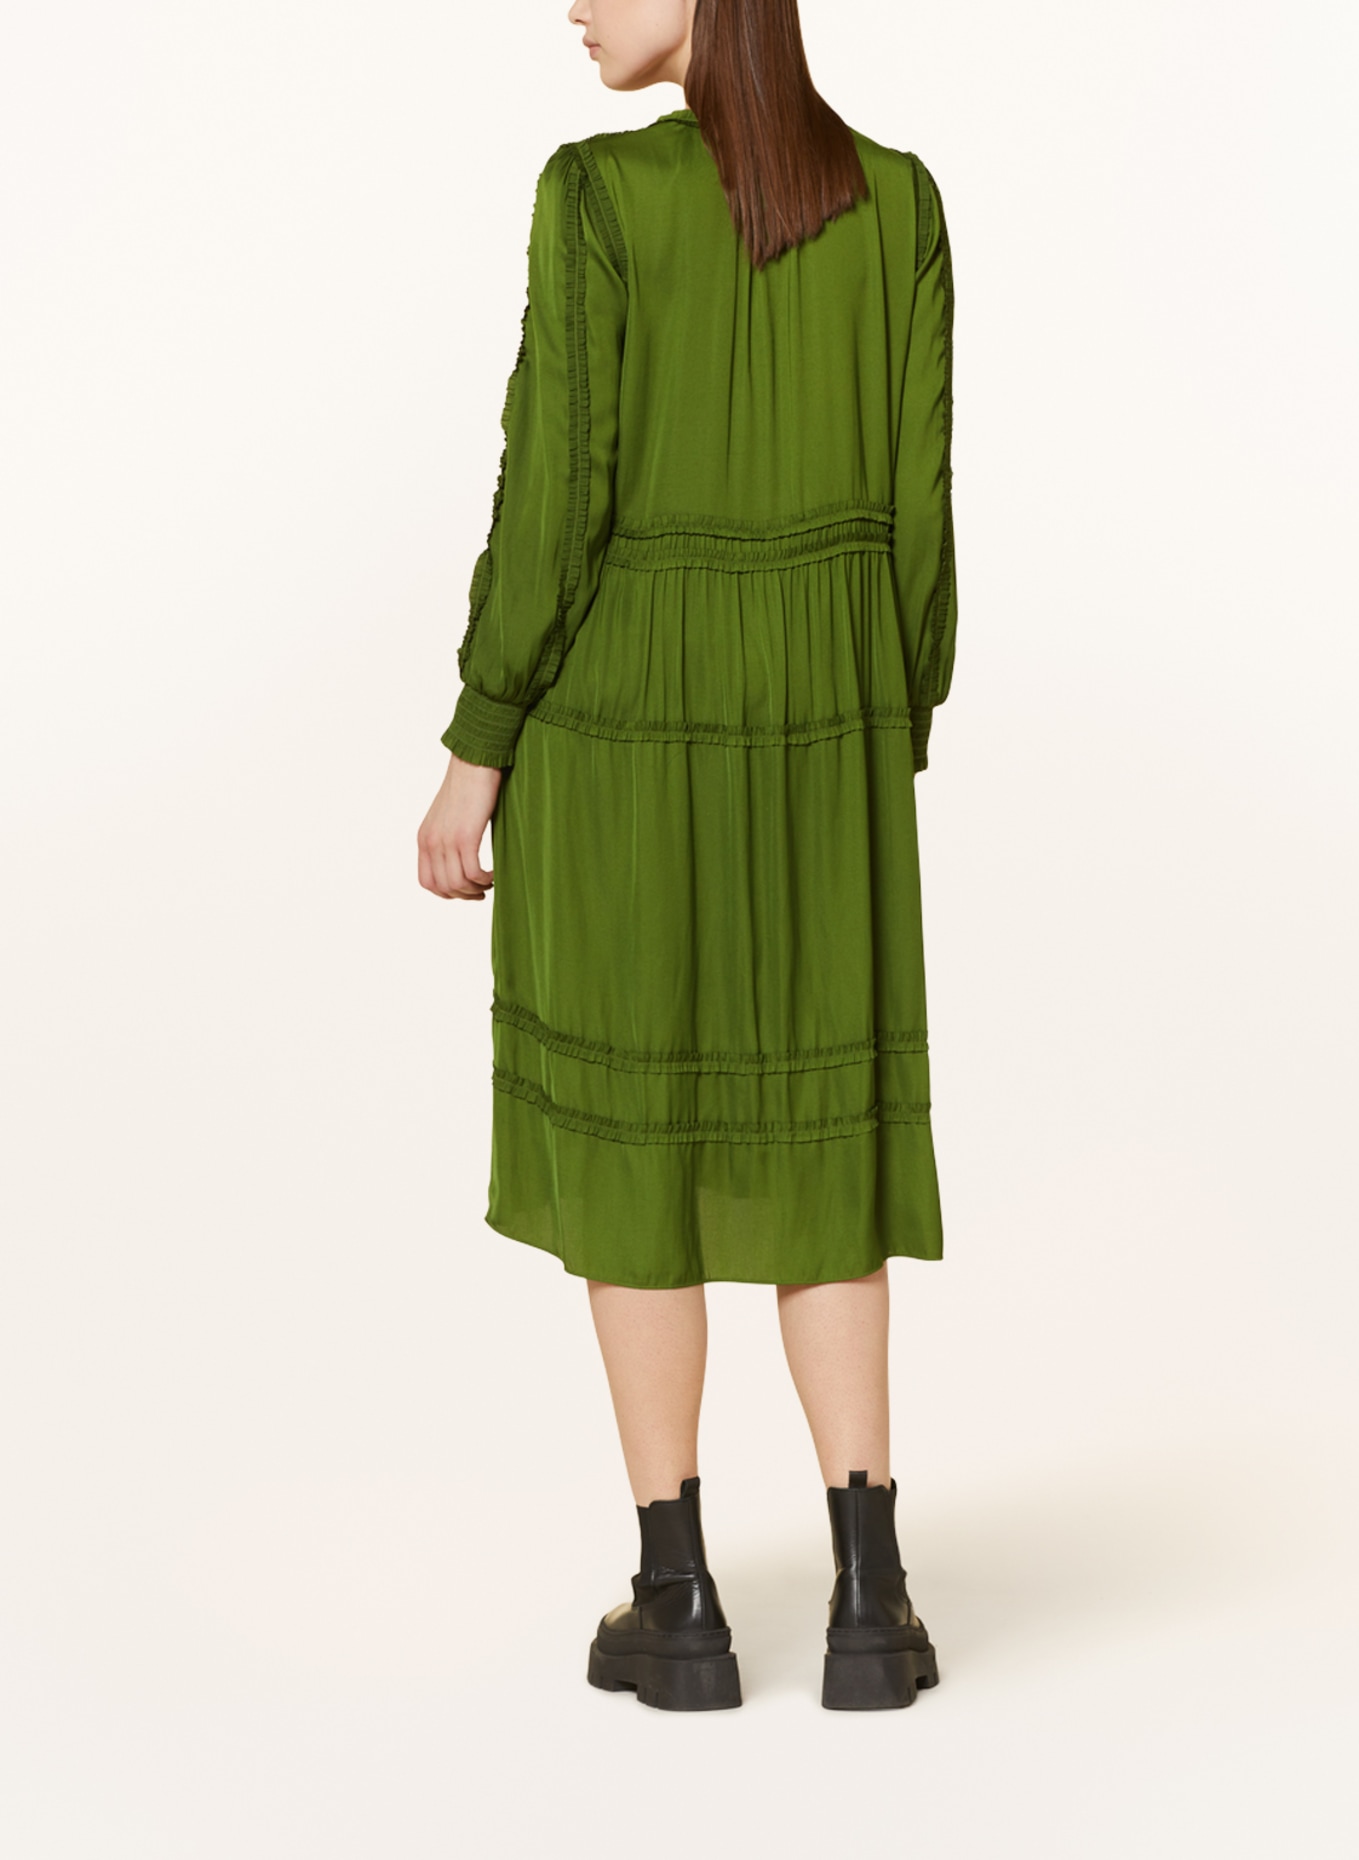 MARC CAIN Kleid mit Rüschen, Farbe: 573 orient green (Bild 3)